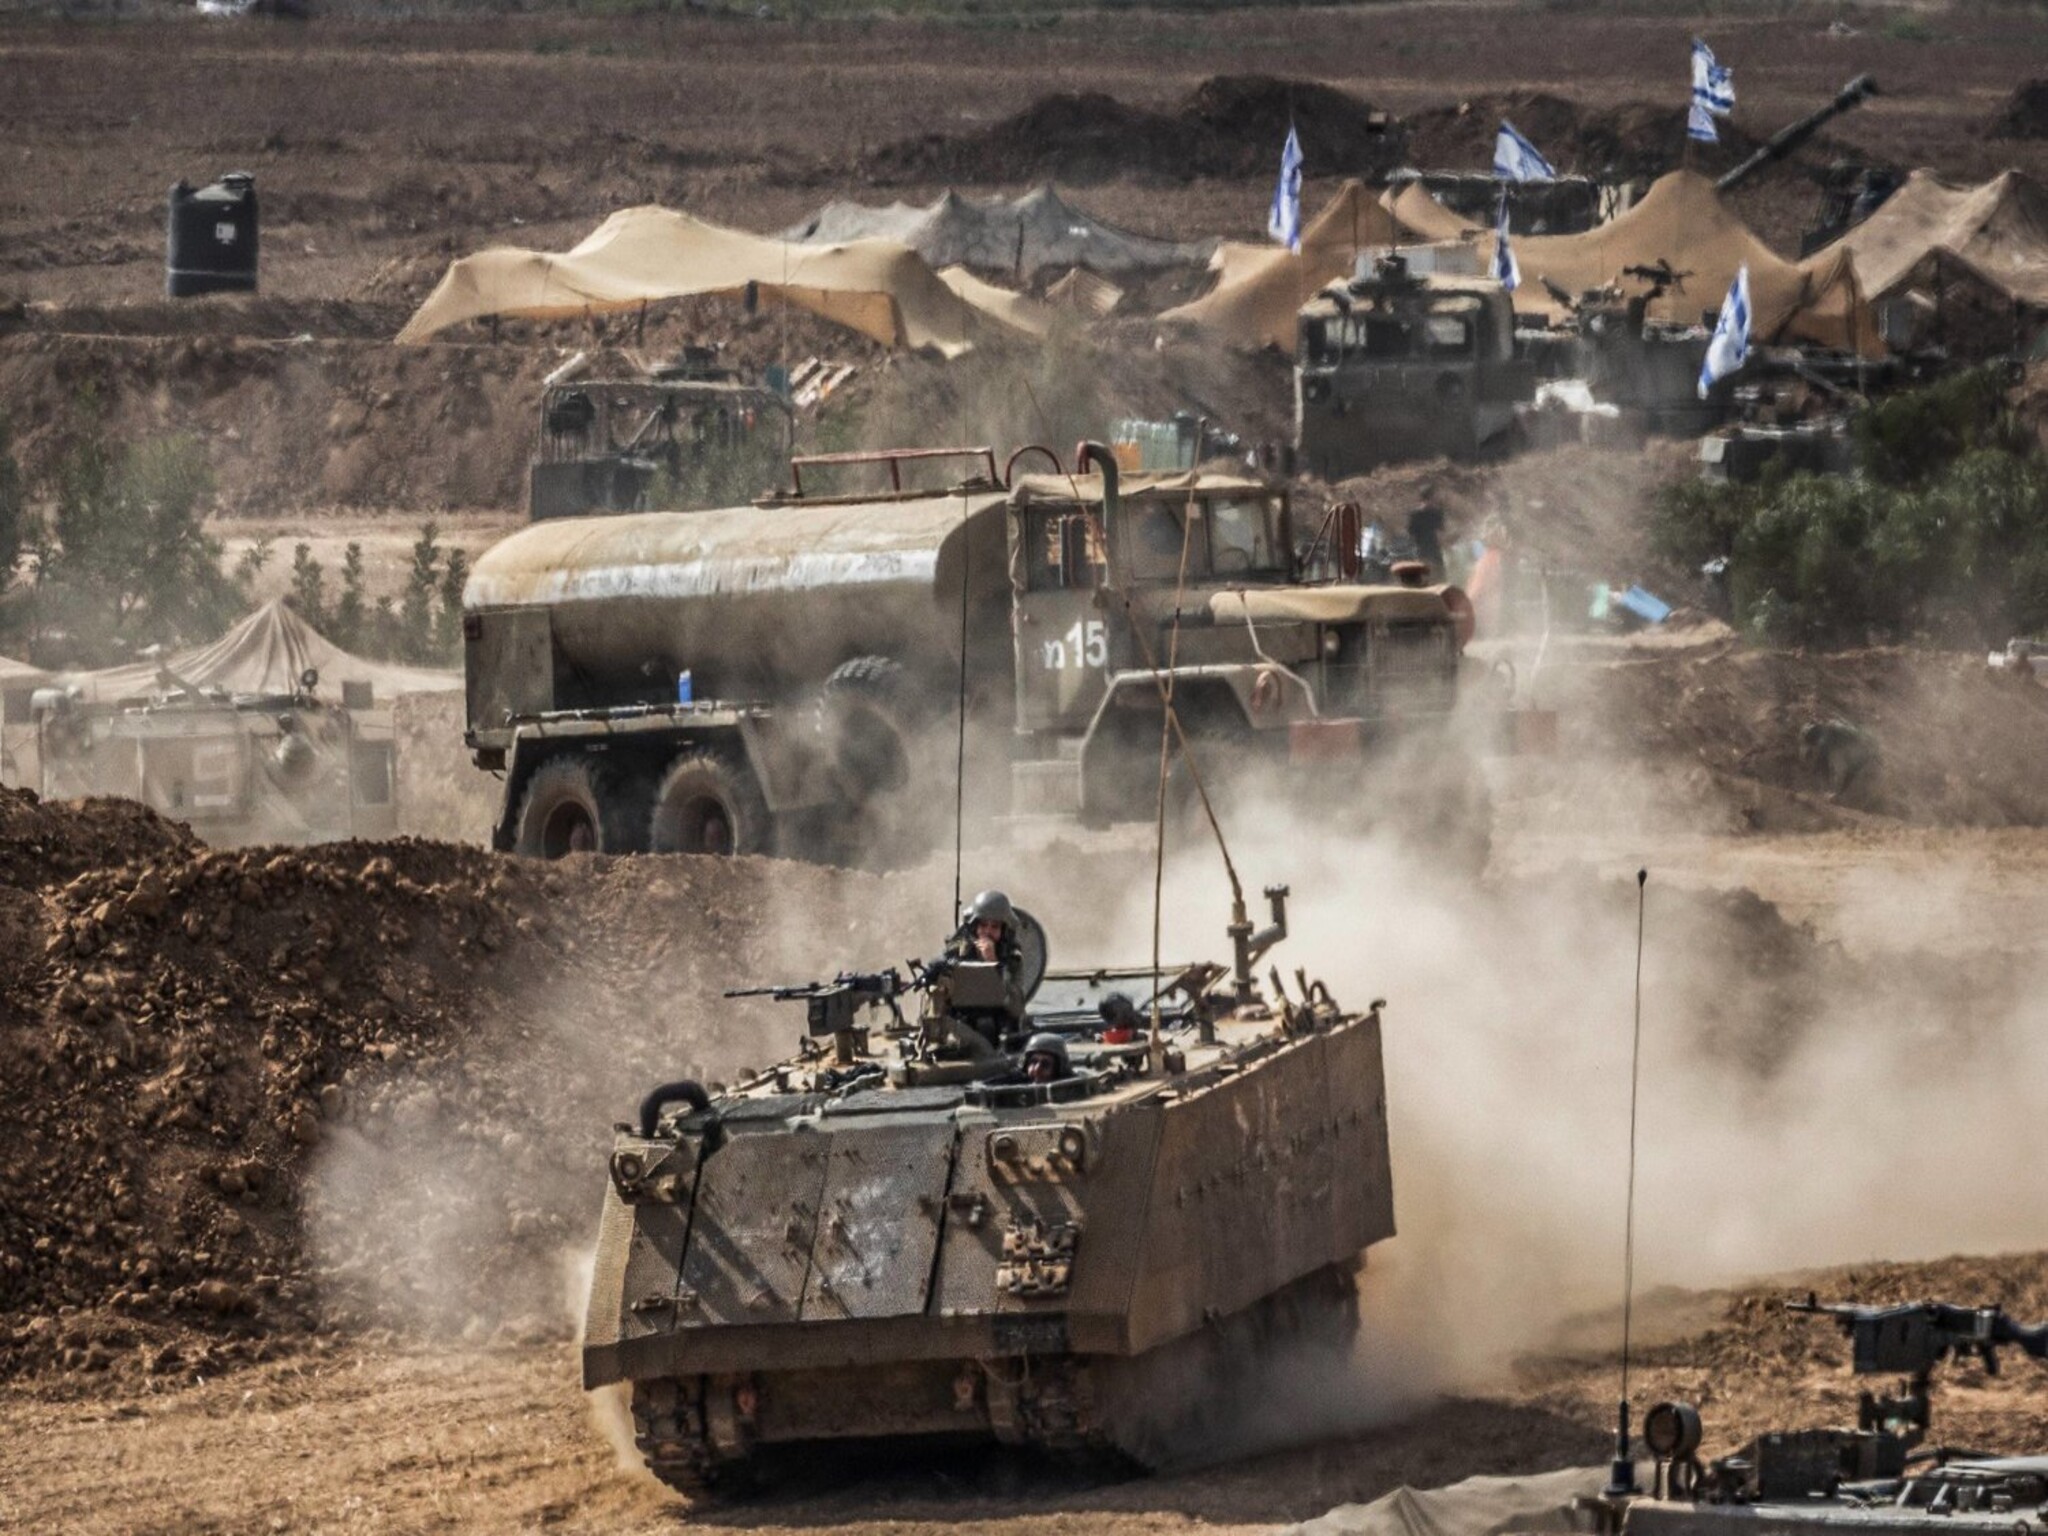 مدرعة "إم-113"... لماذا يلجأ الجيش الإسرائيلي إلى أستخدام سلاح قديم ؟!